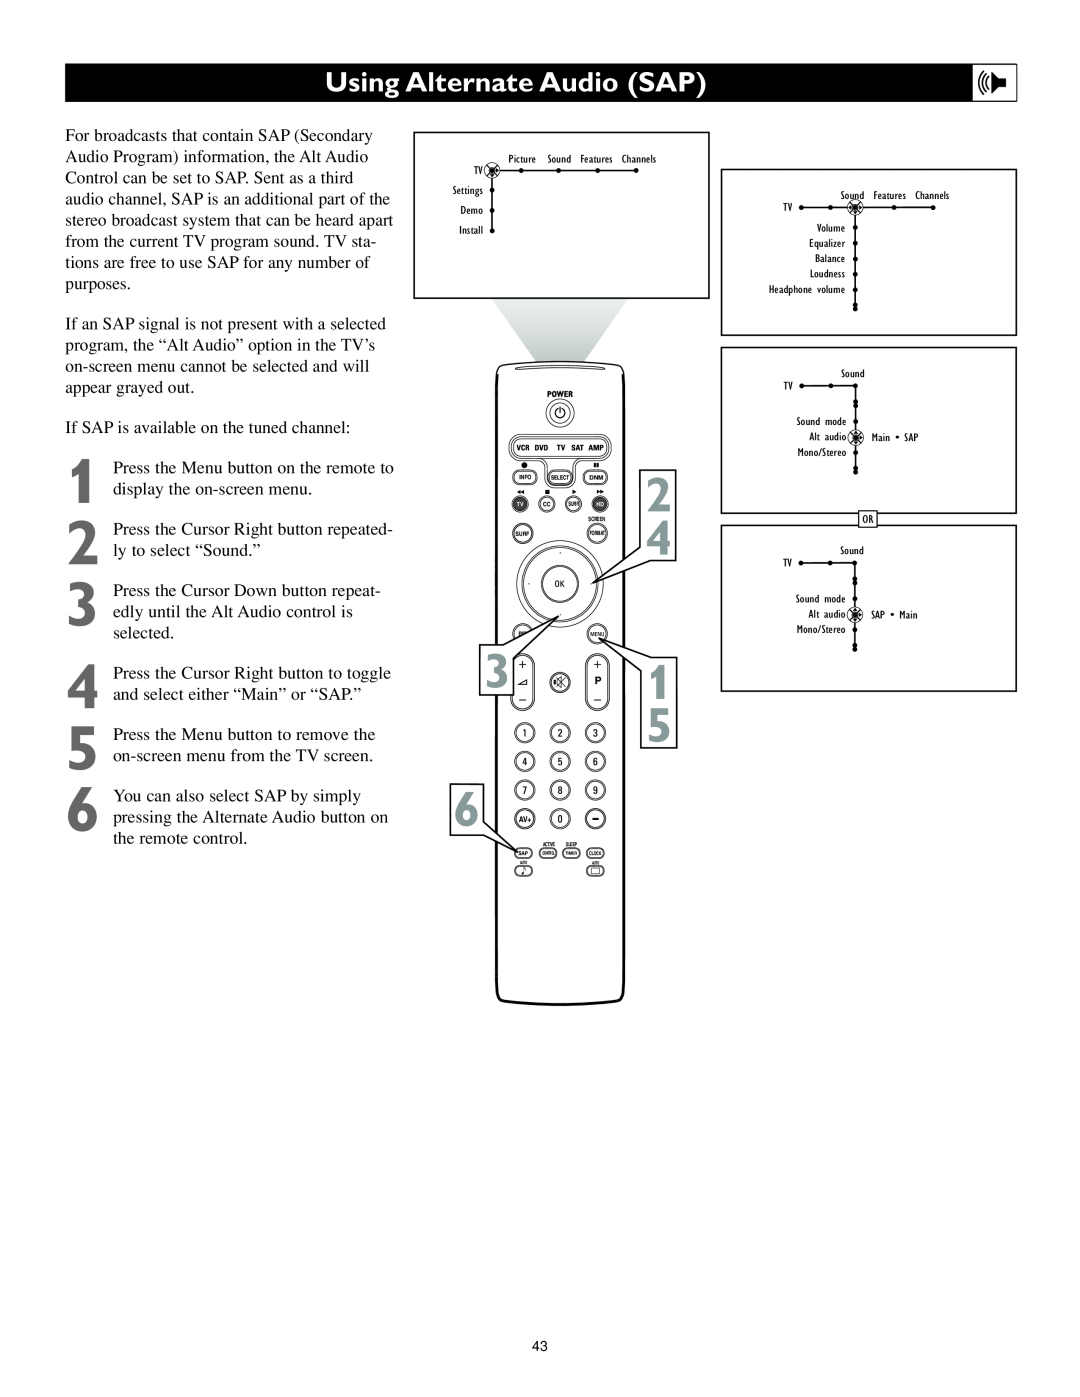 Philips 55PL9524, 62PL9524 setup guide Using Alternate Audio SAP, 6 AV+ 